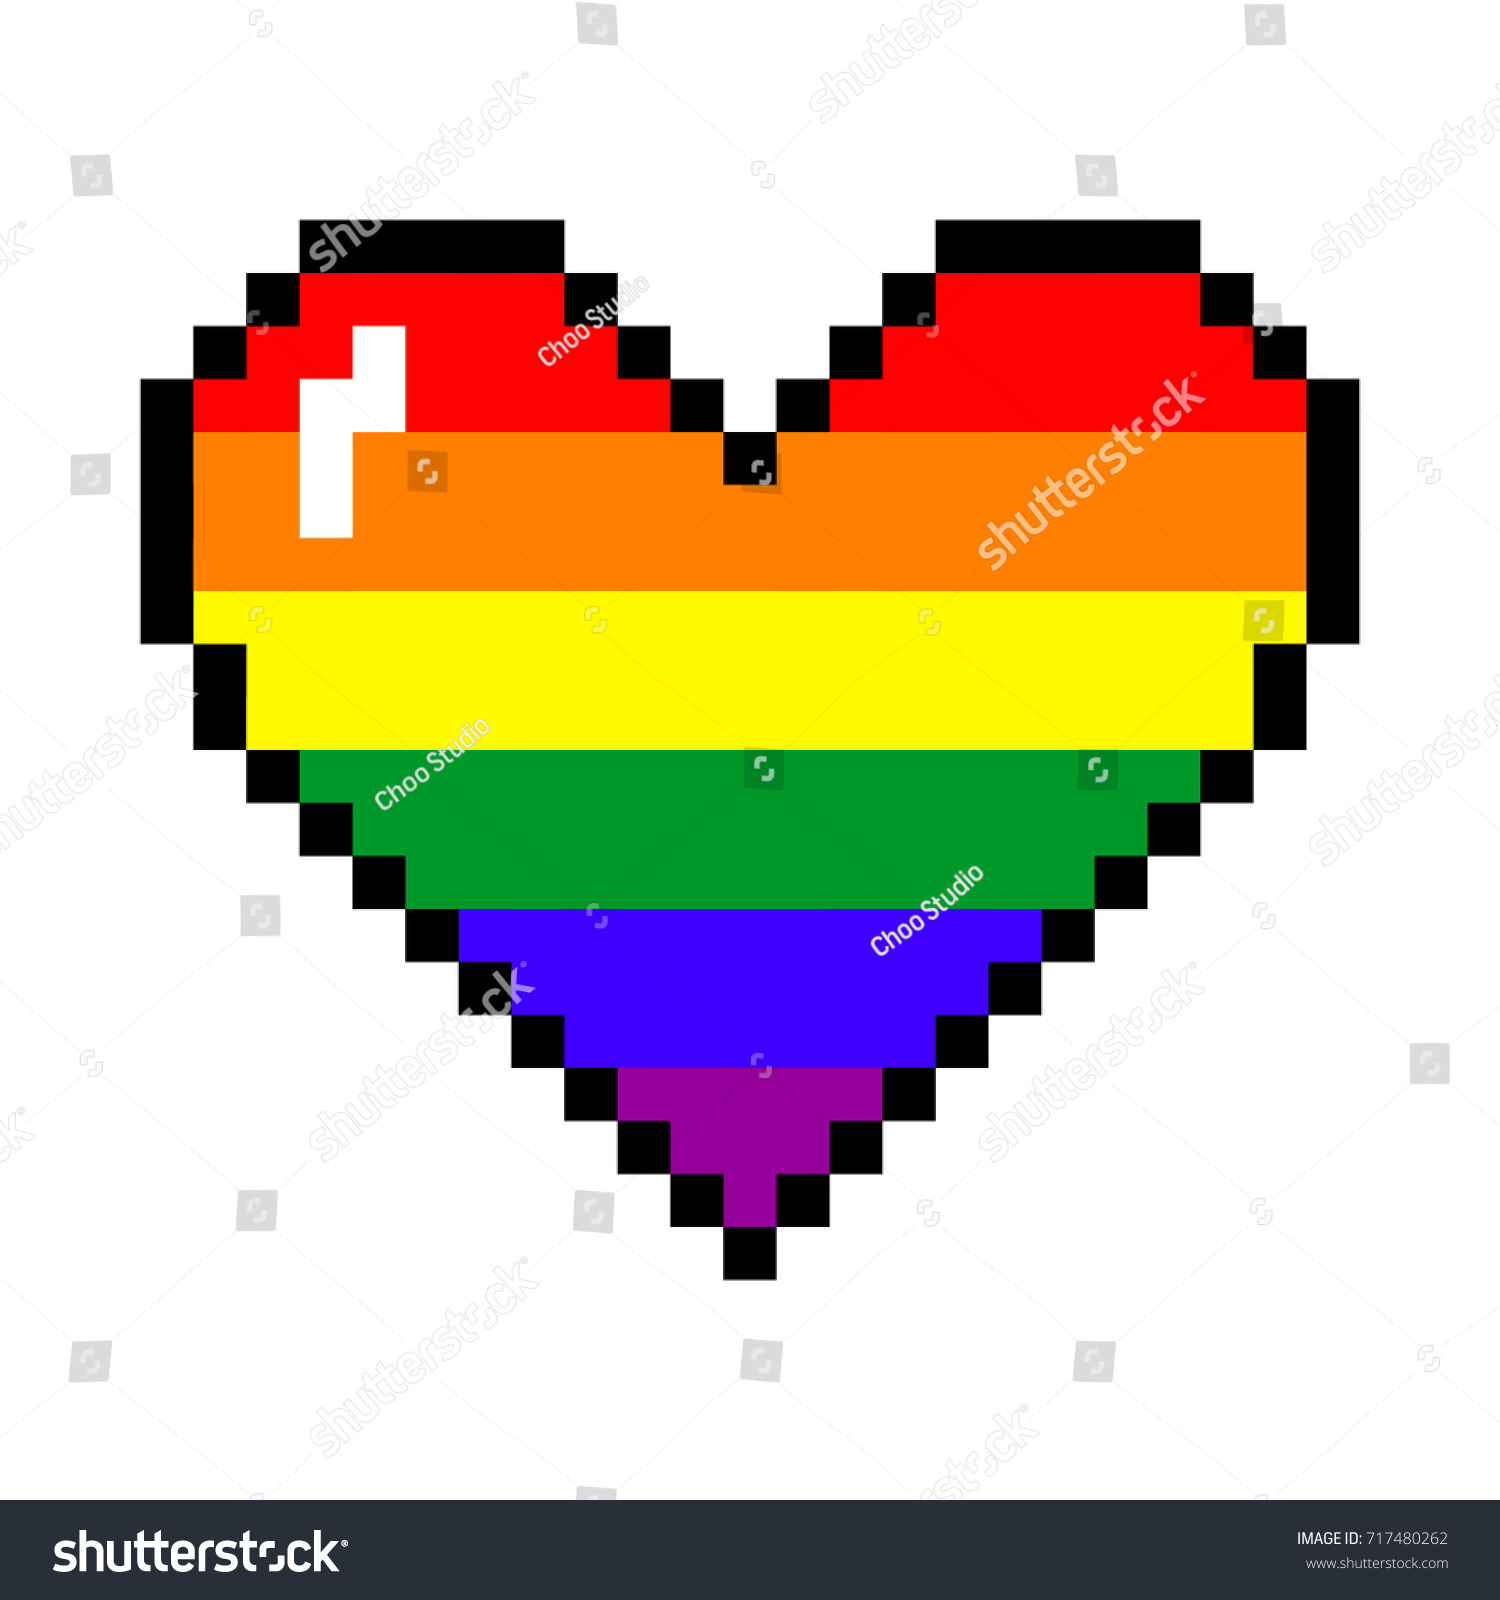 Whee Multicolor Design Genderfluid Pride 8-Bit Pixel Heart Throw Pillow 18x18